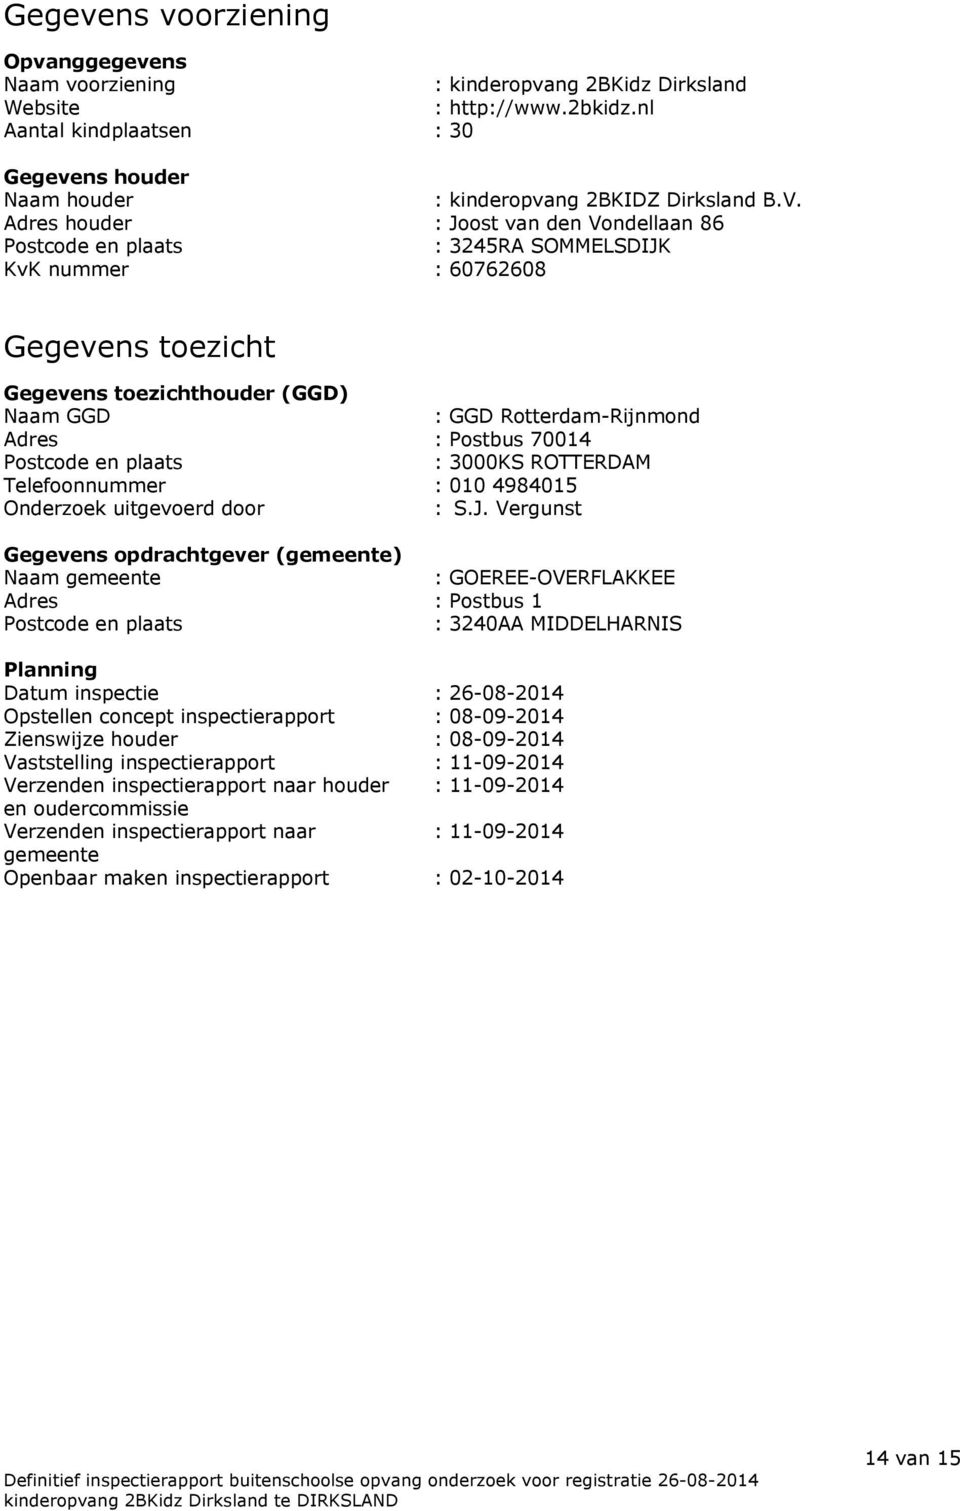 Adres houder : Joost van den Vondellaan 86 Postcode en plaats : 3245RA SOMMELSDIJK KvK nummer : 60762608 Gegevens toezicht Gegevens toezichthouder (GGD) Naam GGD : GGD Rotterdam-Rijnmond Adres :